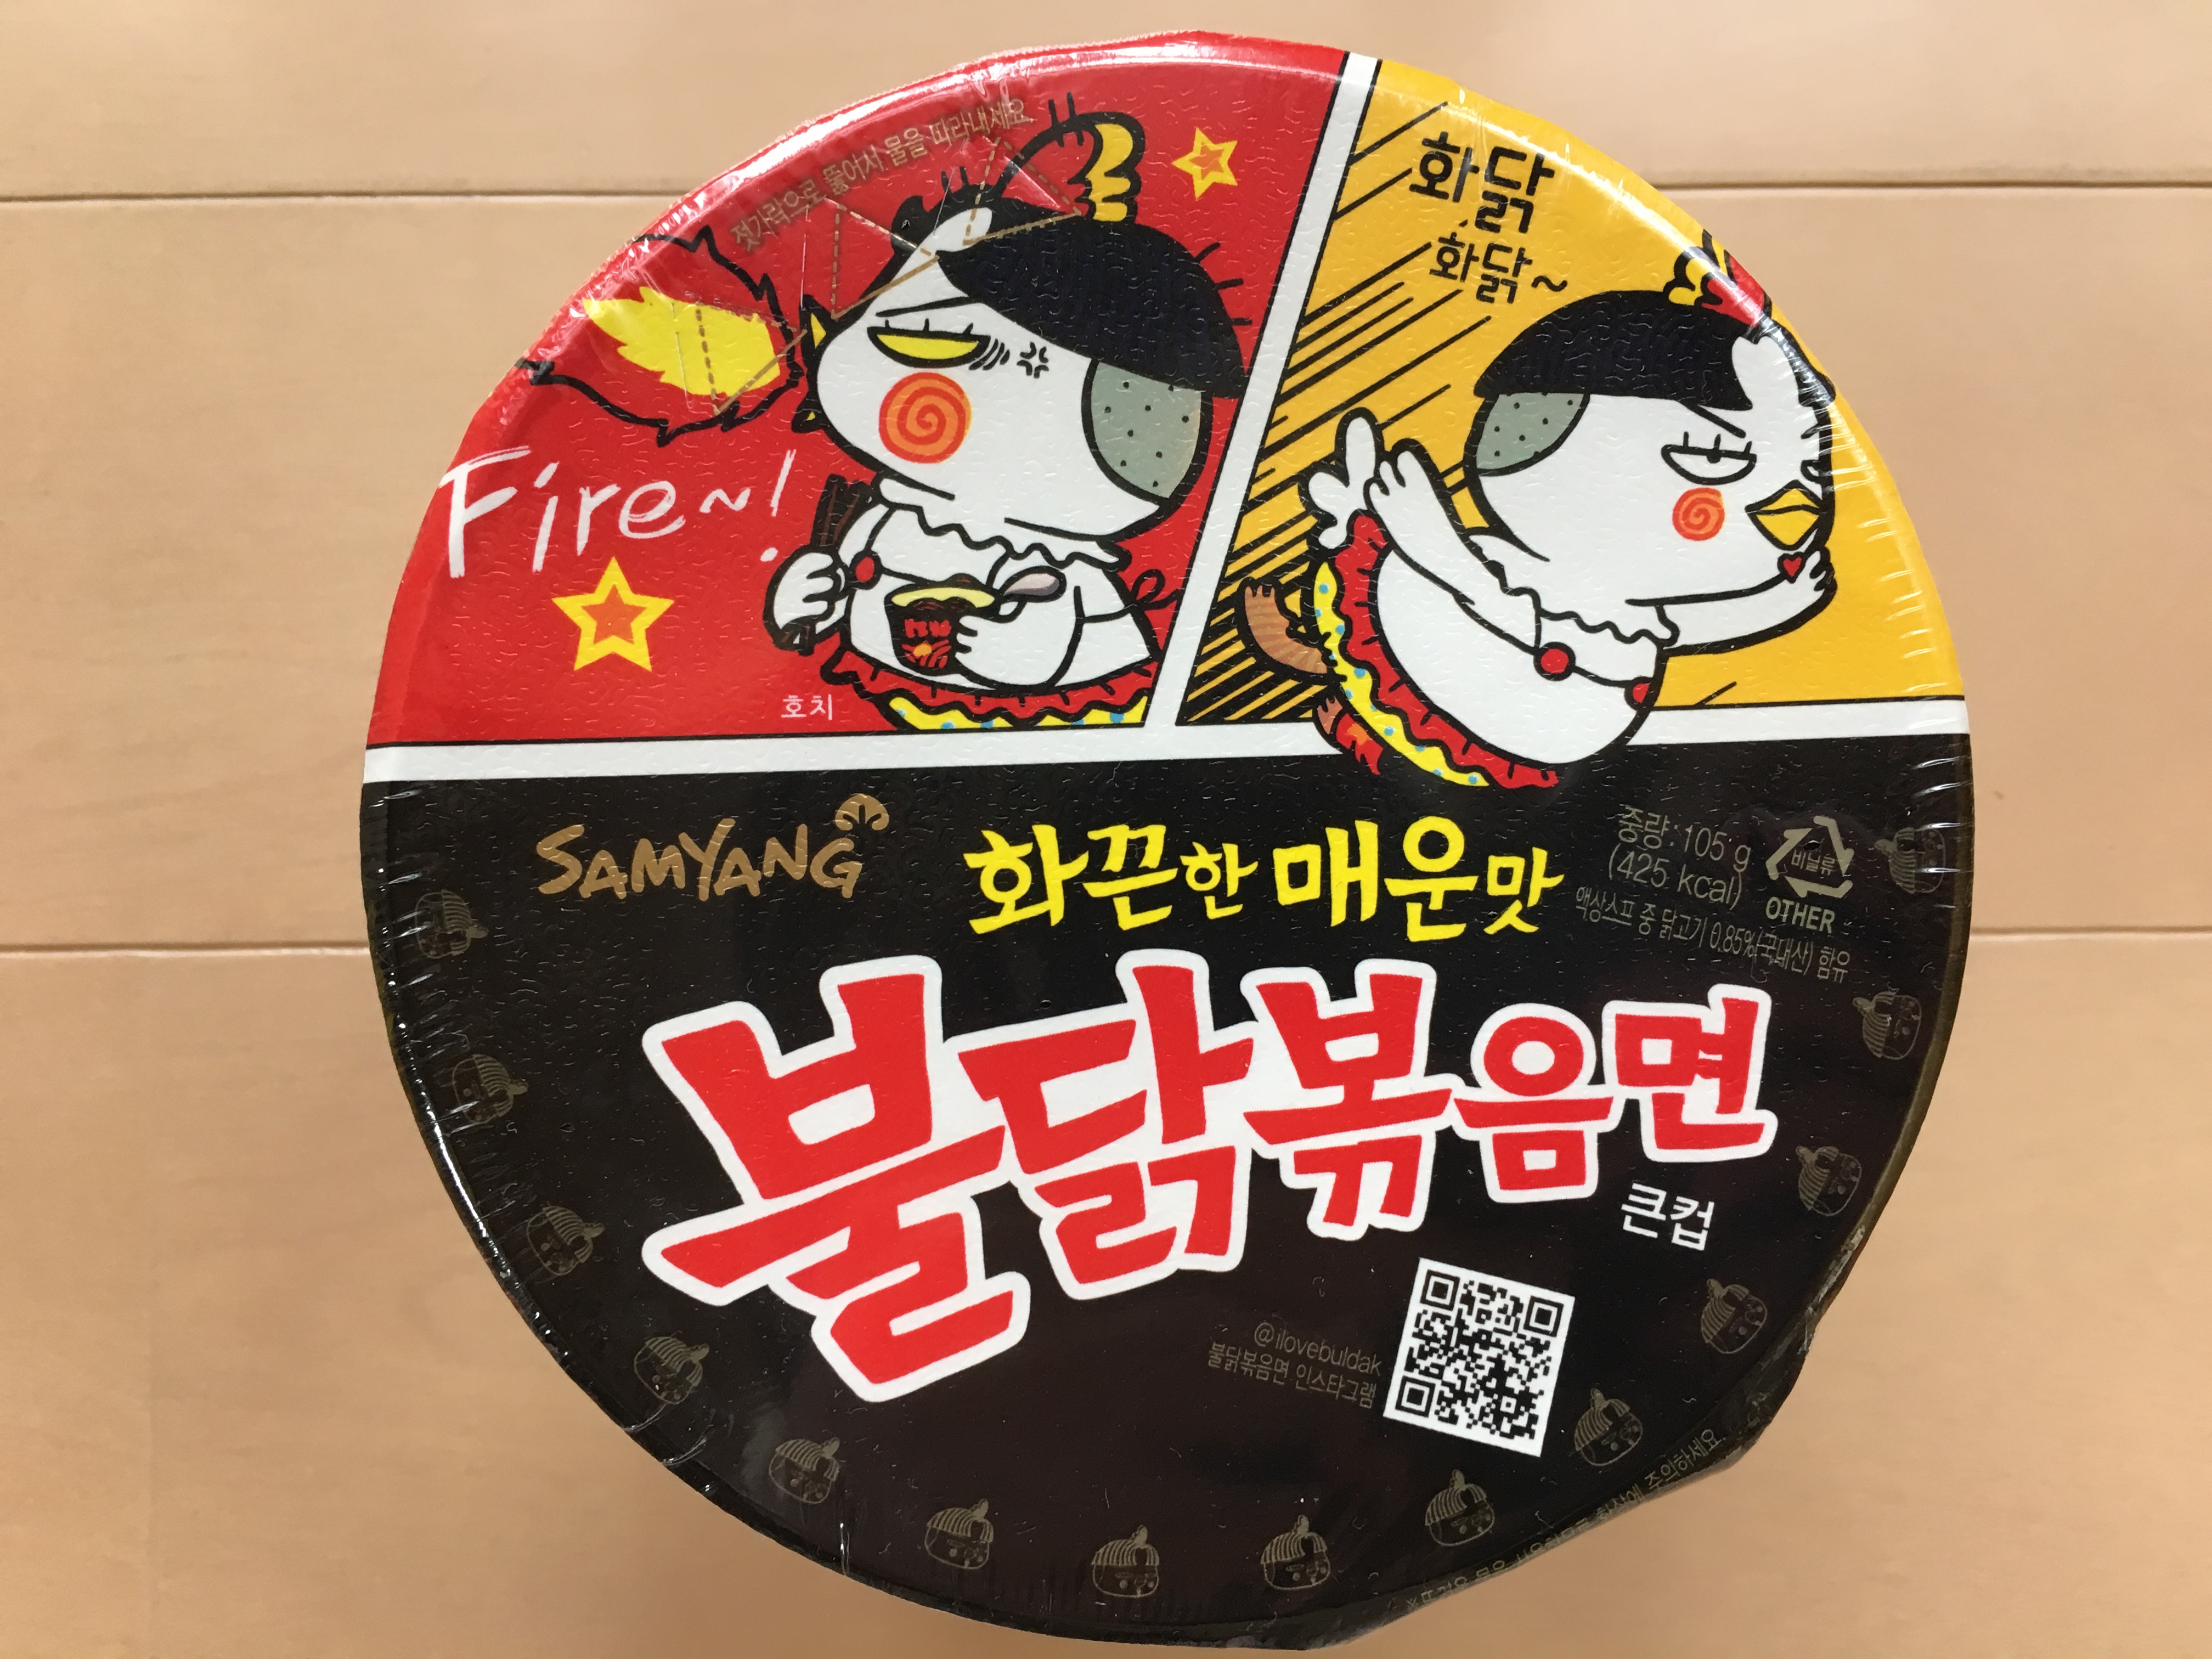 まとめ 韓国おすすめカップ麺ランキング5選 17ver なうんのひとり旅日記